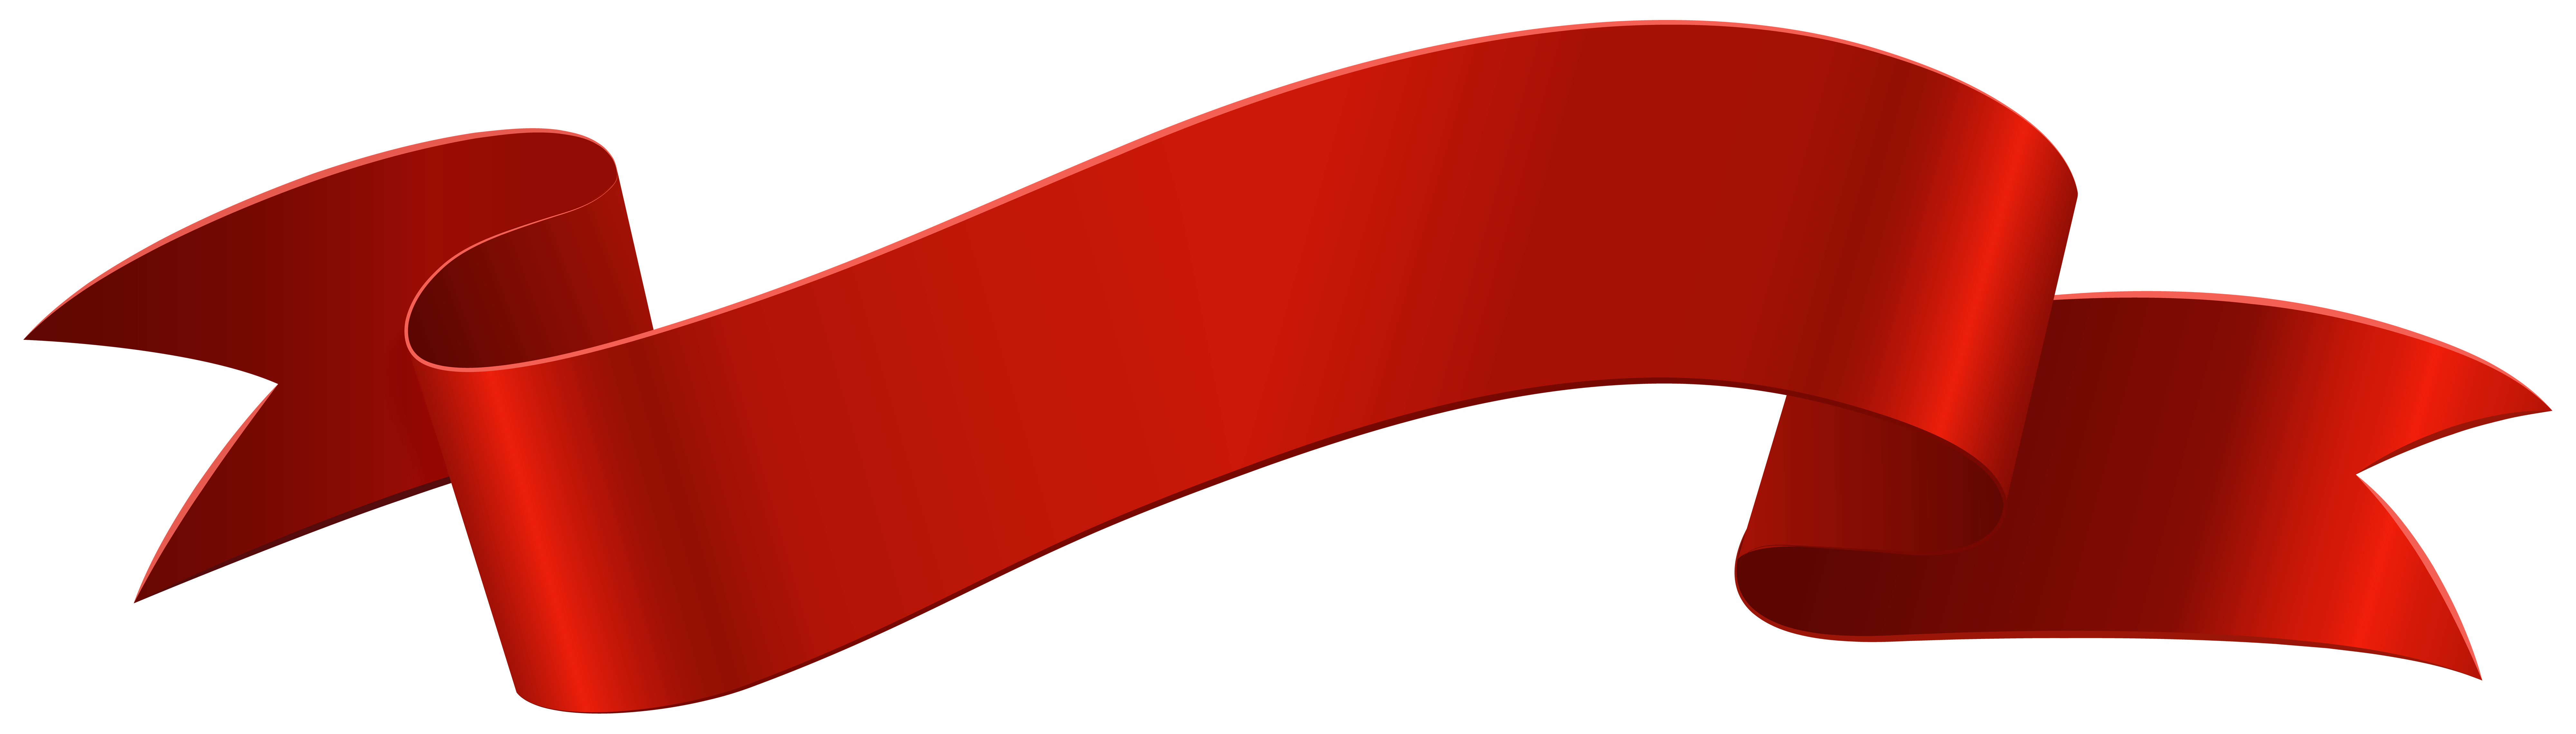 Red Banner Deco là giải pháp tuyệt vời để khiến các bài viết của bạn trở nên thu hút và chuyên nghiệp hơn. Với màu đỏ sặc sỡ và thiết kế tinh tế, banner này sẽ giúp tăng khả năng tương tác của bài viết của bạn bất cứ khi nào được sử dụng. 